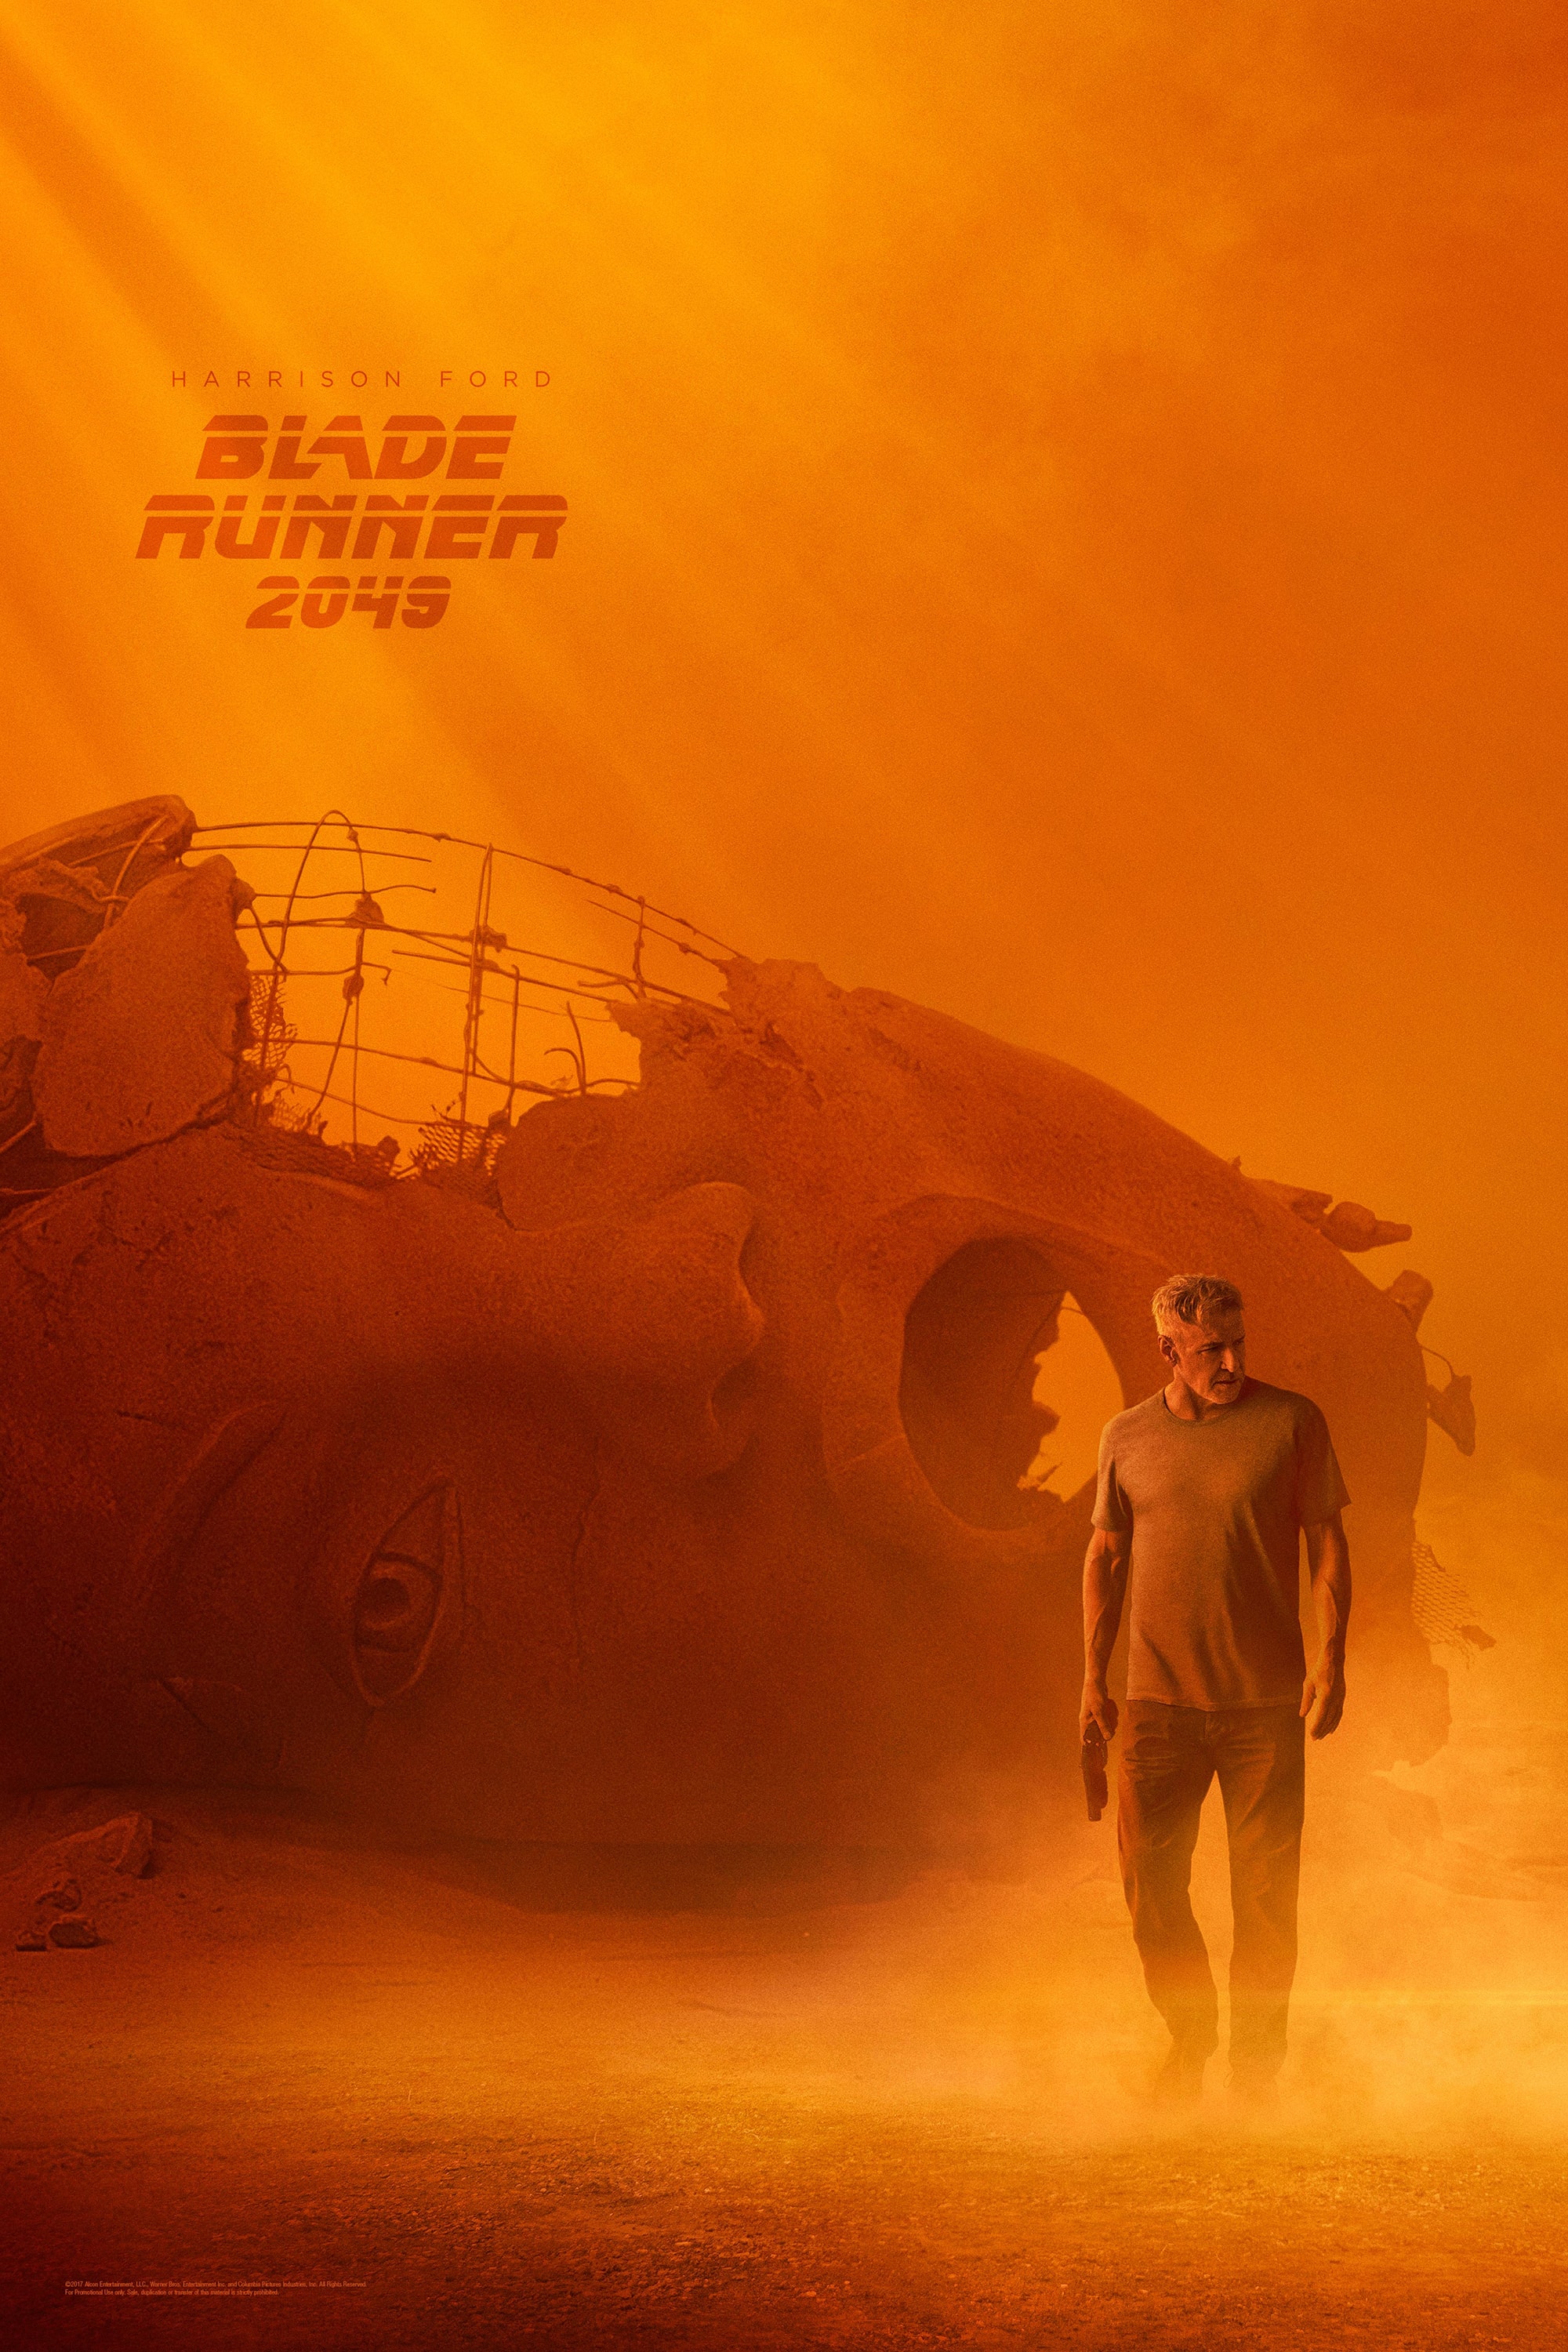 《Blade Runner 2049》釋出全新型格海報